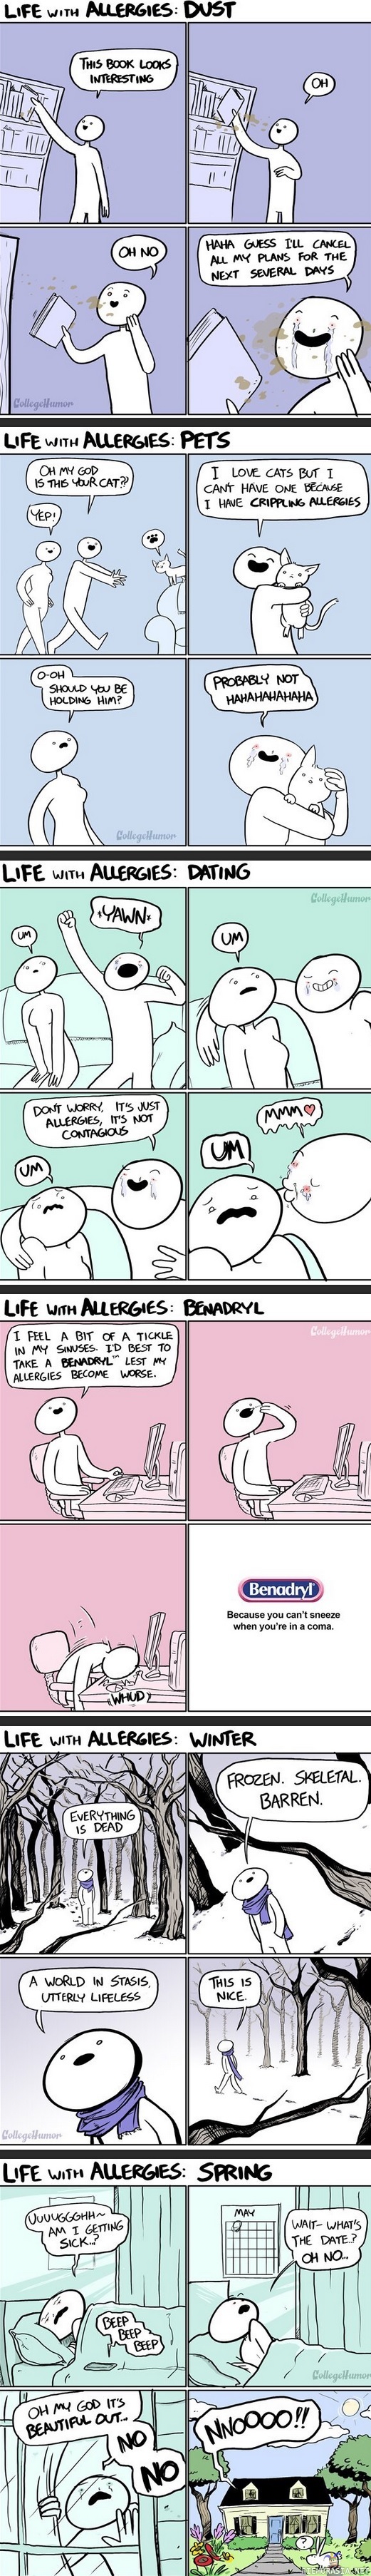 Elämää allergian kanssa